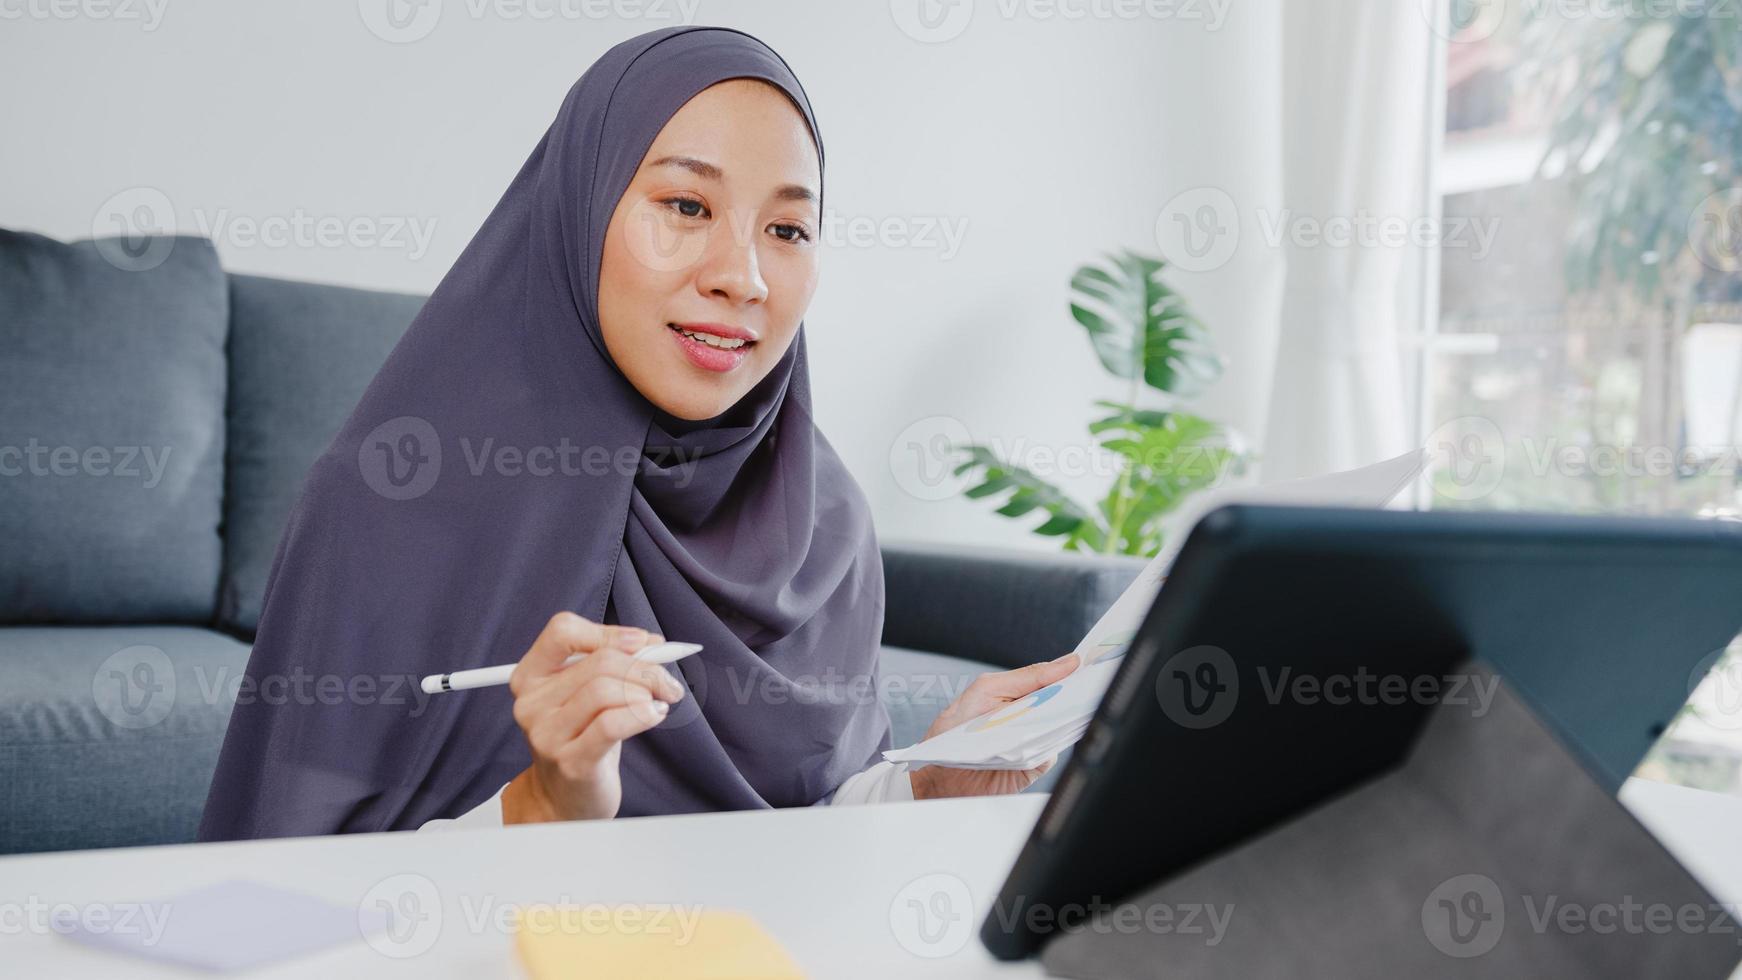 asien muslimsk dam bära huvudduk avslappnad användning surfplatta prata med kollegor om försäljningsrapport i konferensvideosamtal medan du arbetar hemifrån i vardagsrummet. social distansering, karantän för corona. foto